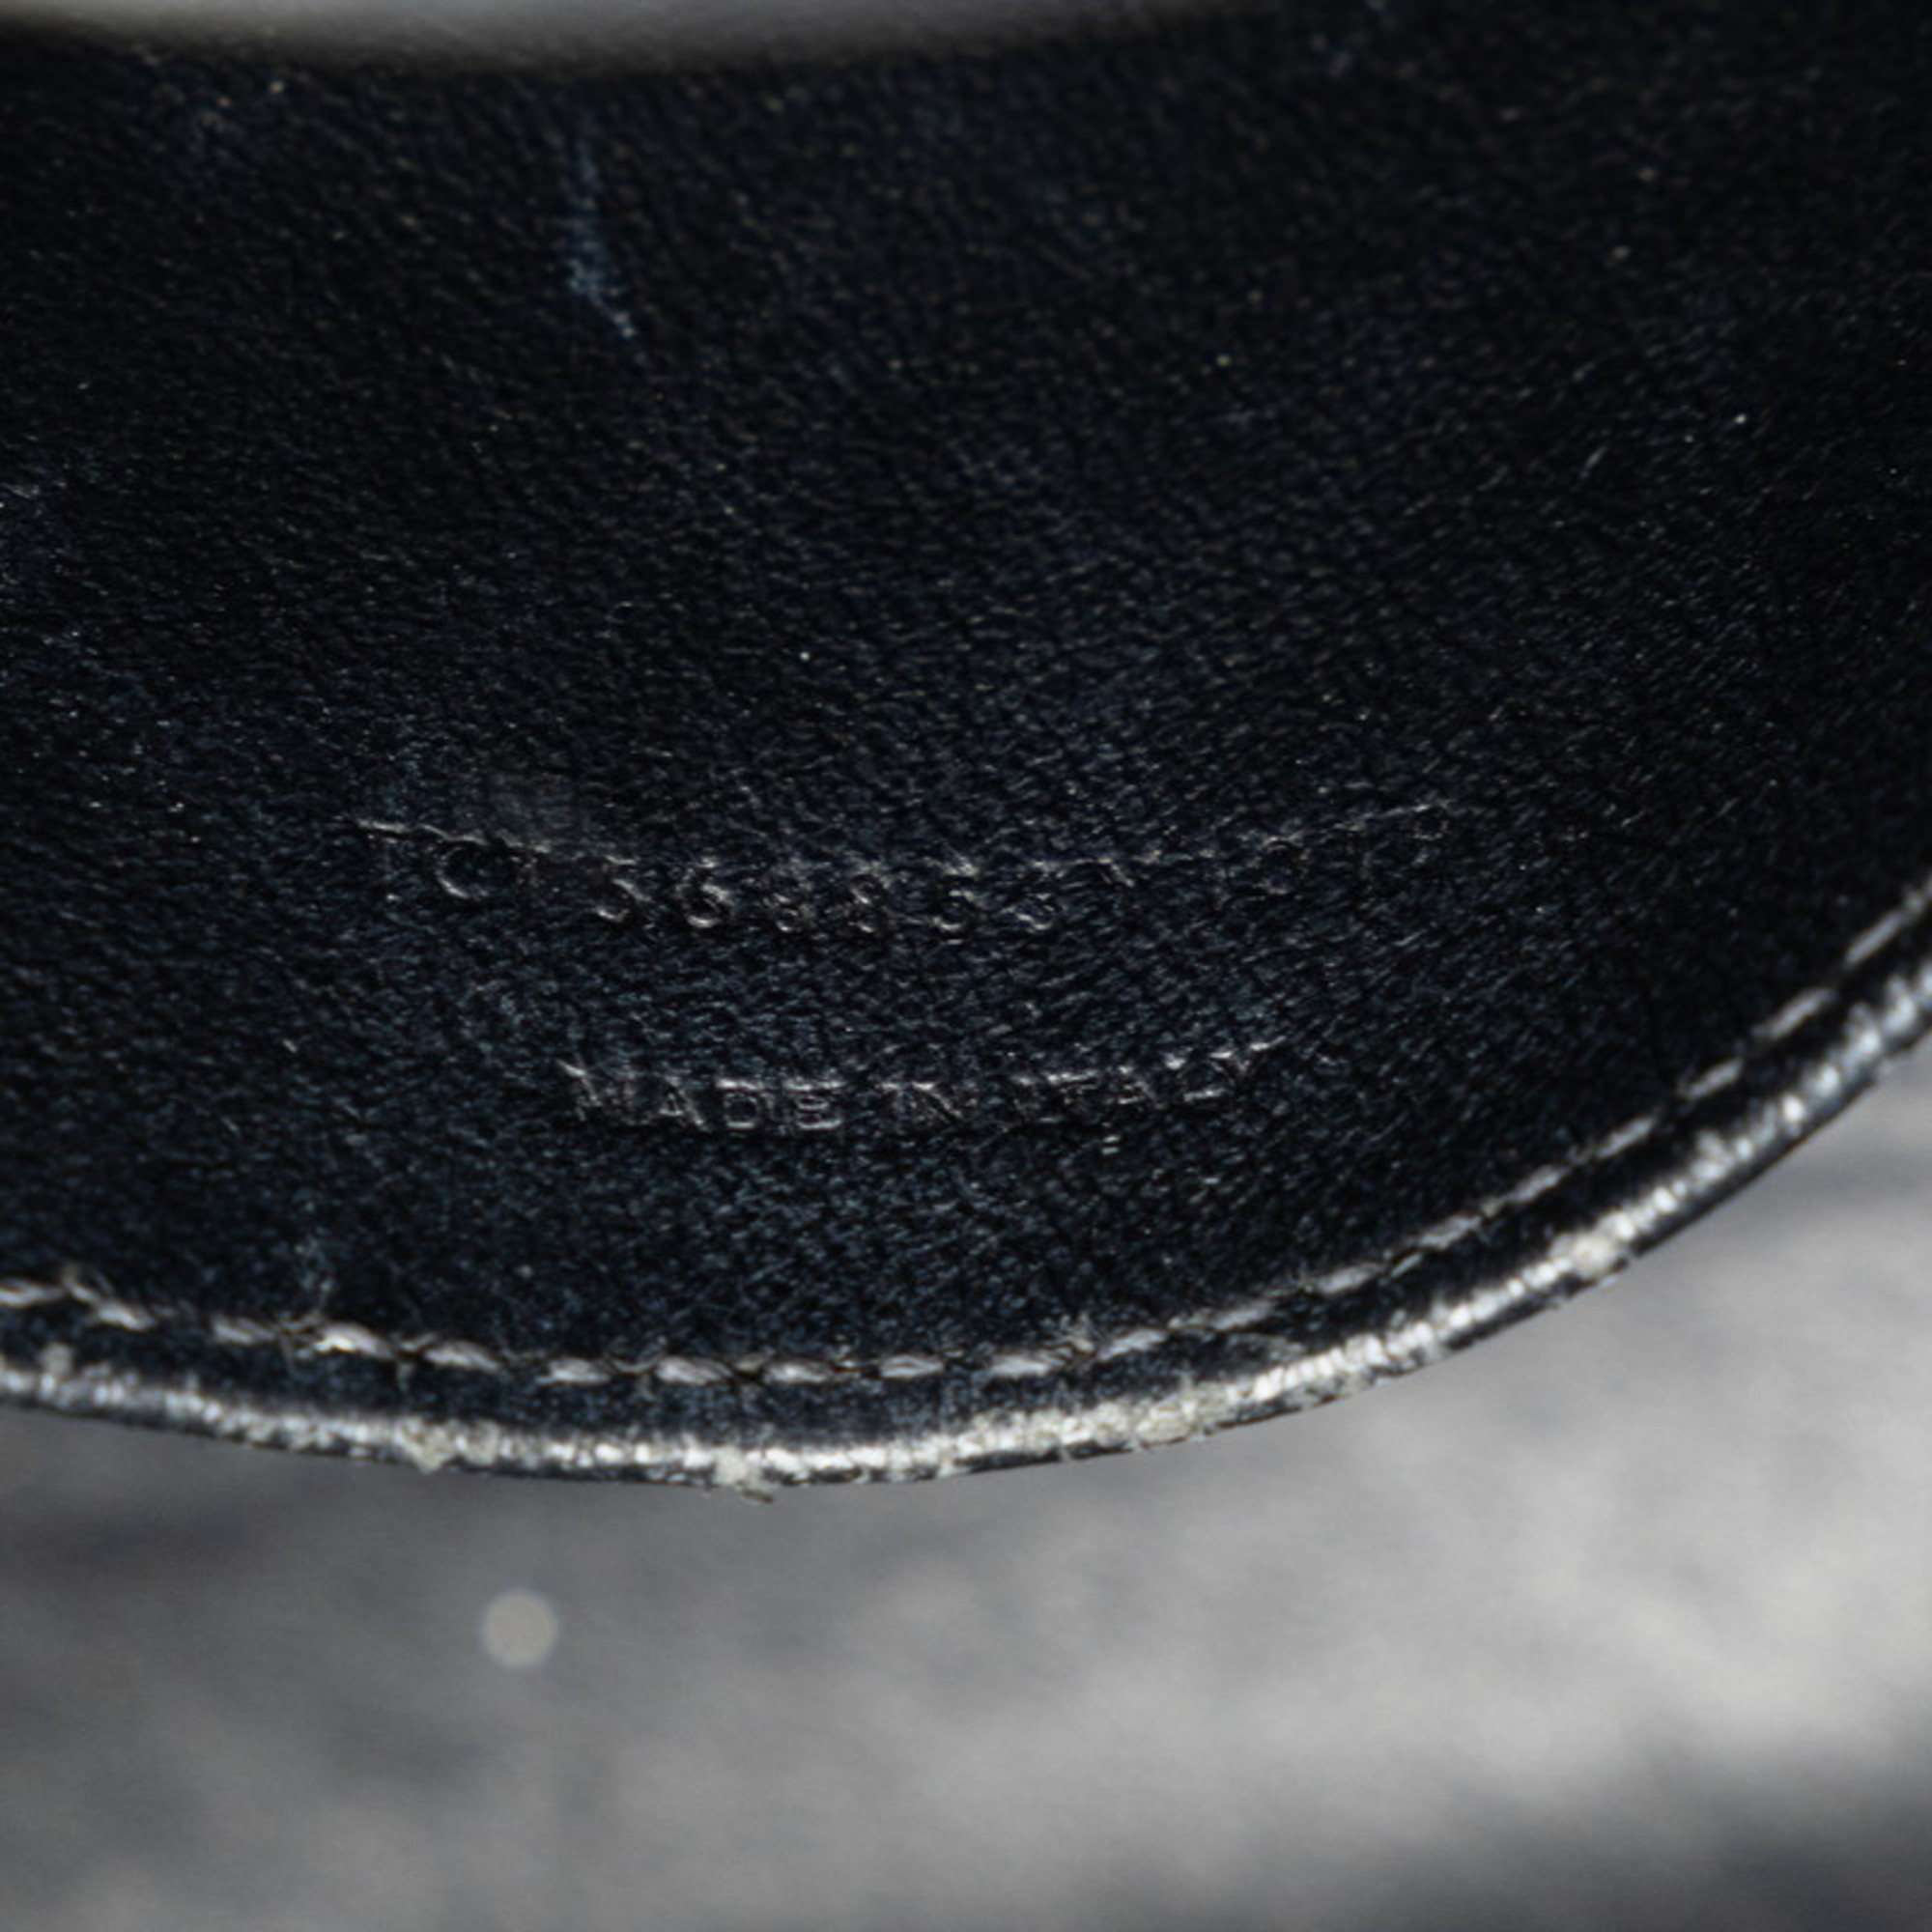 Saint Laurent Monogram Baby Cabas Handbag 472466 Black Leather Women's SAINT LAURENT